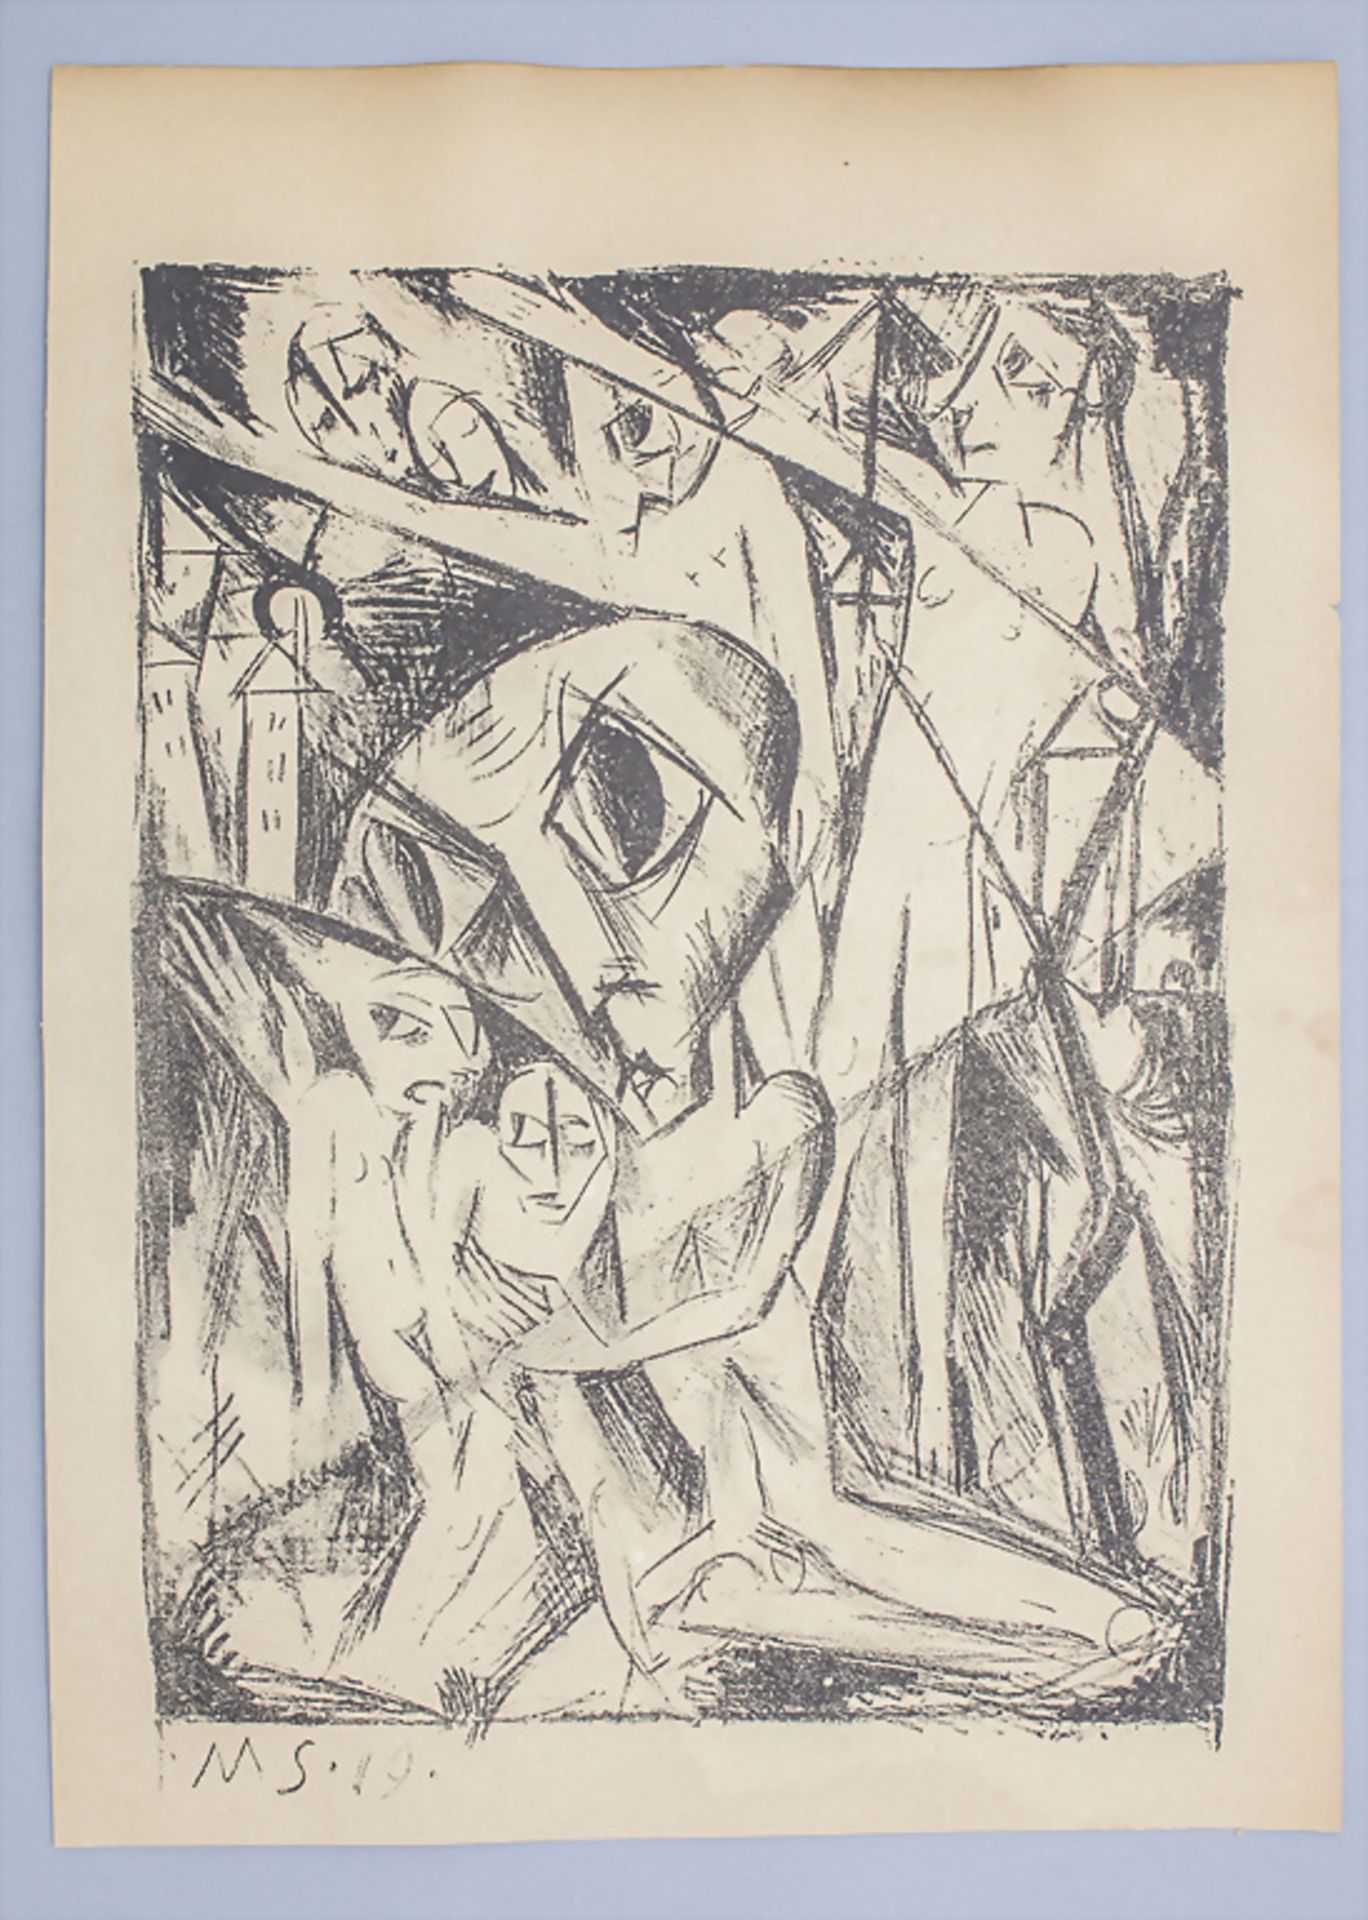 Martel SCHWICHTENBERG (1896-1945), 'Nachtphantasie' / 'Night fantasy', 1919